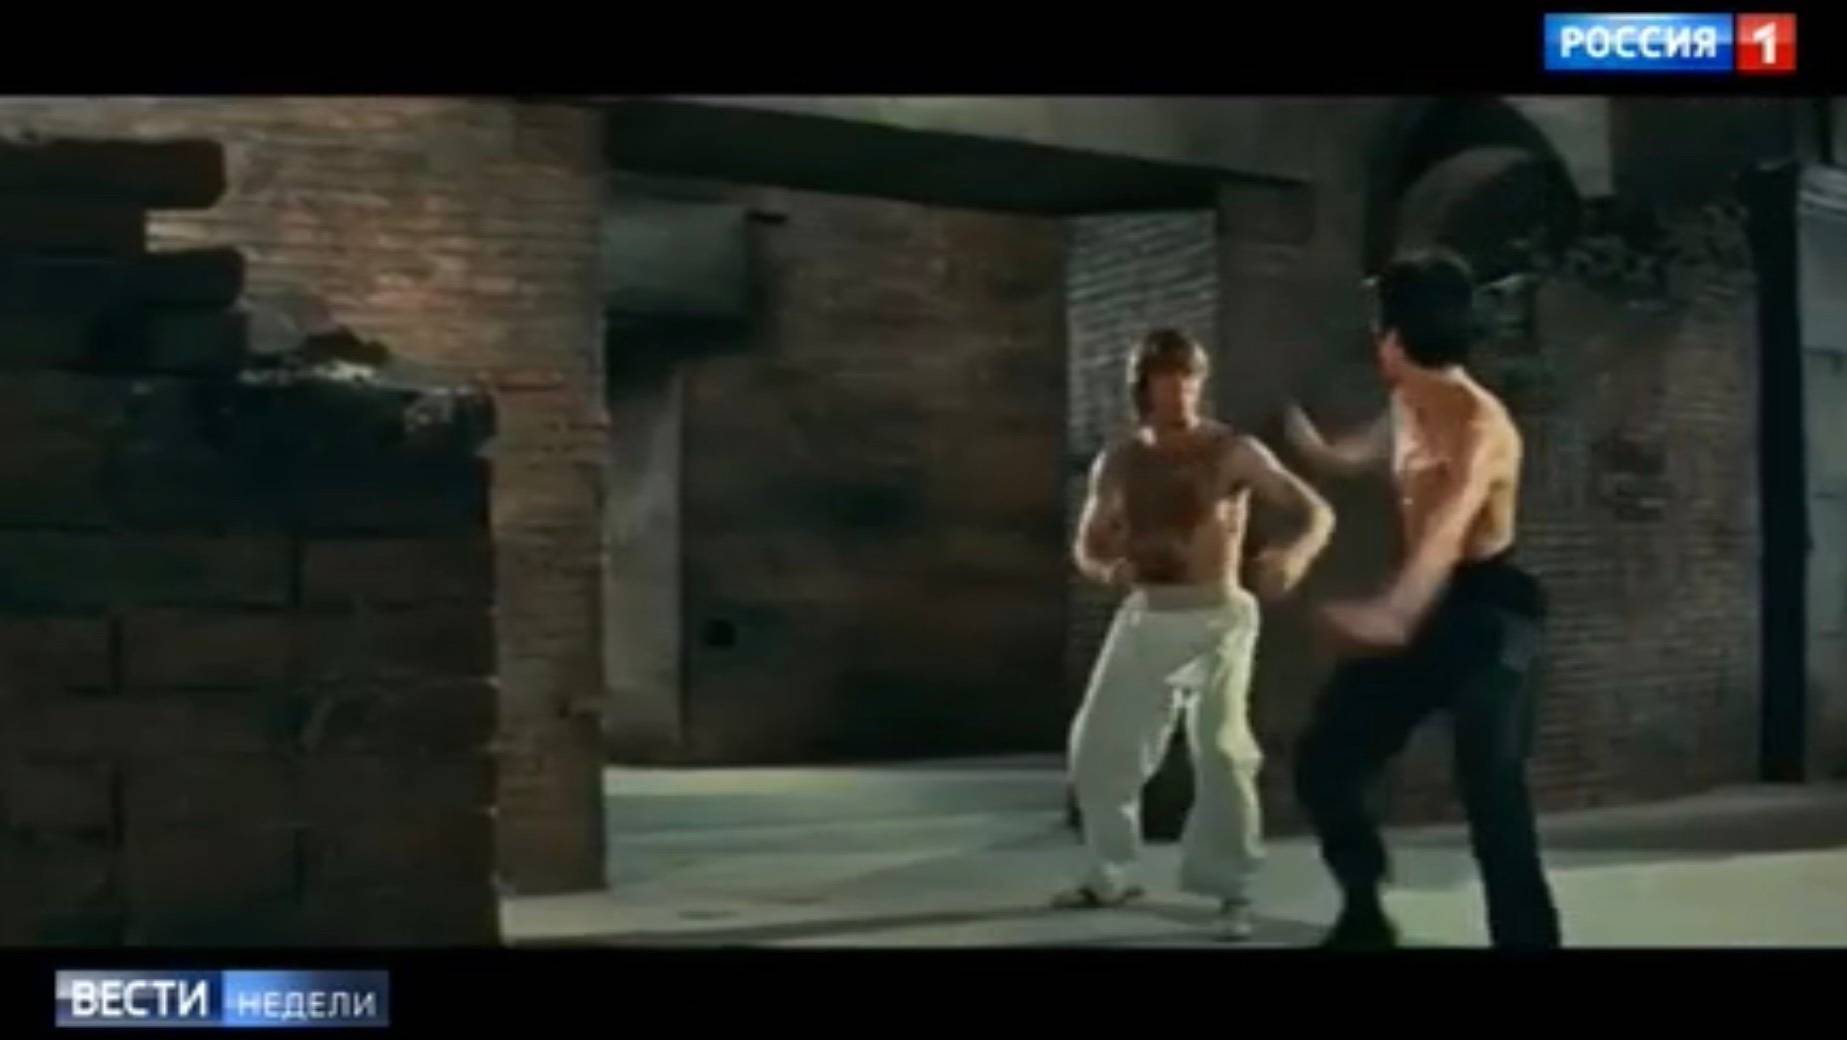 Scena walki karateków z filmu "Wejście smoka"